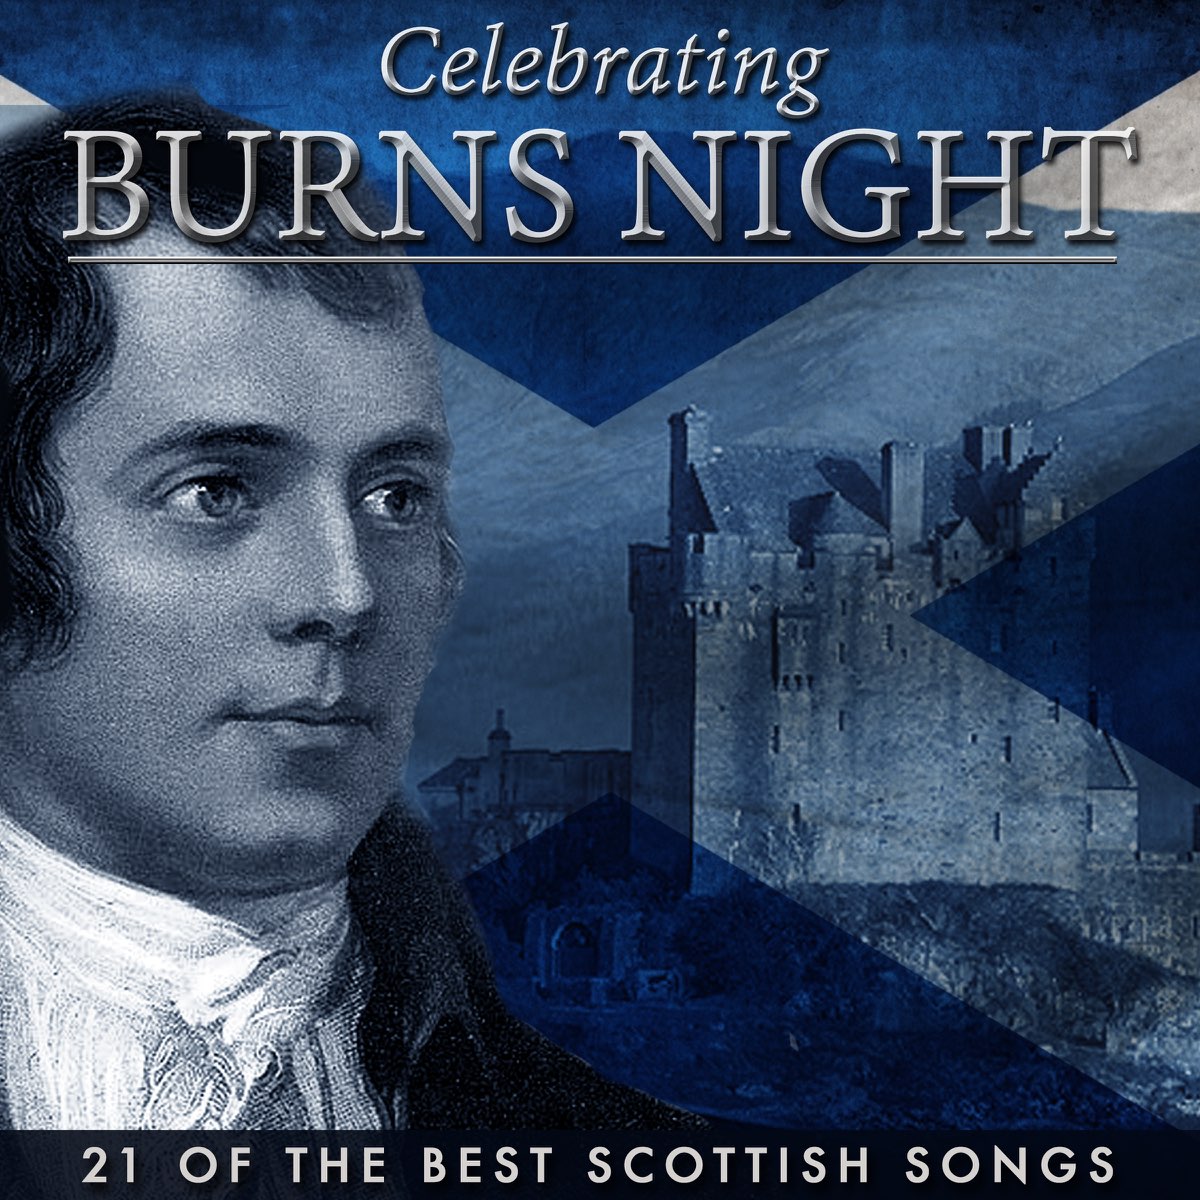 Ночь бернса. Celebrating 'Burns Night'. Тартан на ночь Бернса. 25 Января — ночь Бернса (Burns’ Night).